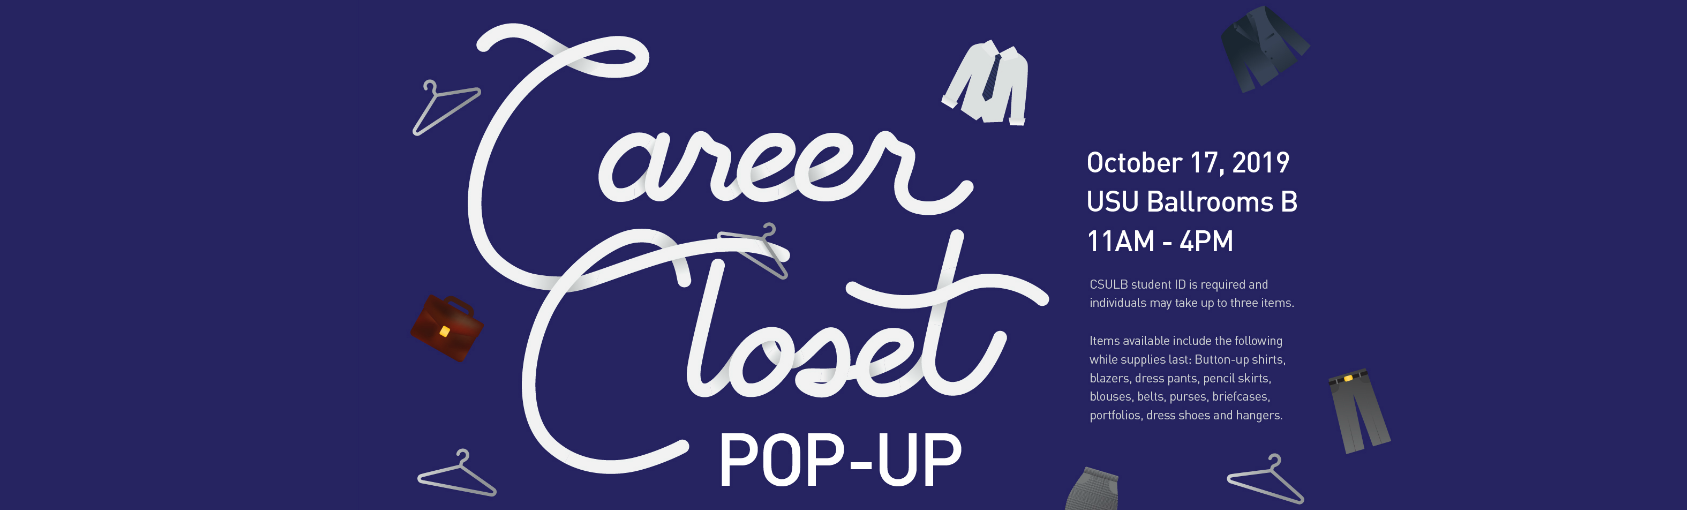 Career Closet Pop-Up on Oct 17 at USU Ballrooms B Banner